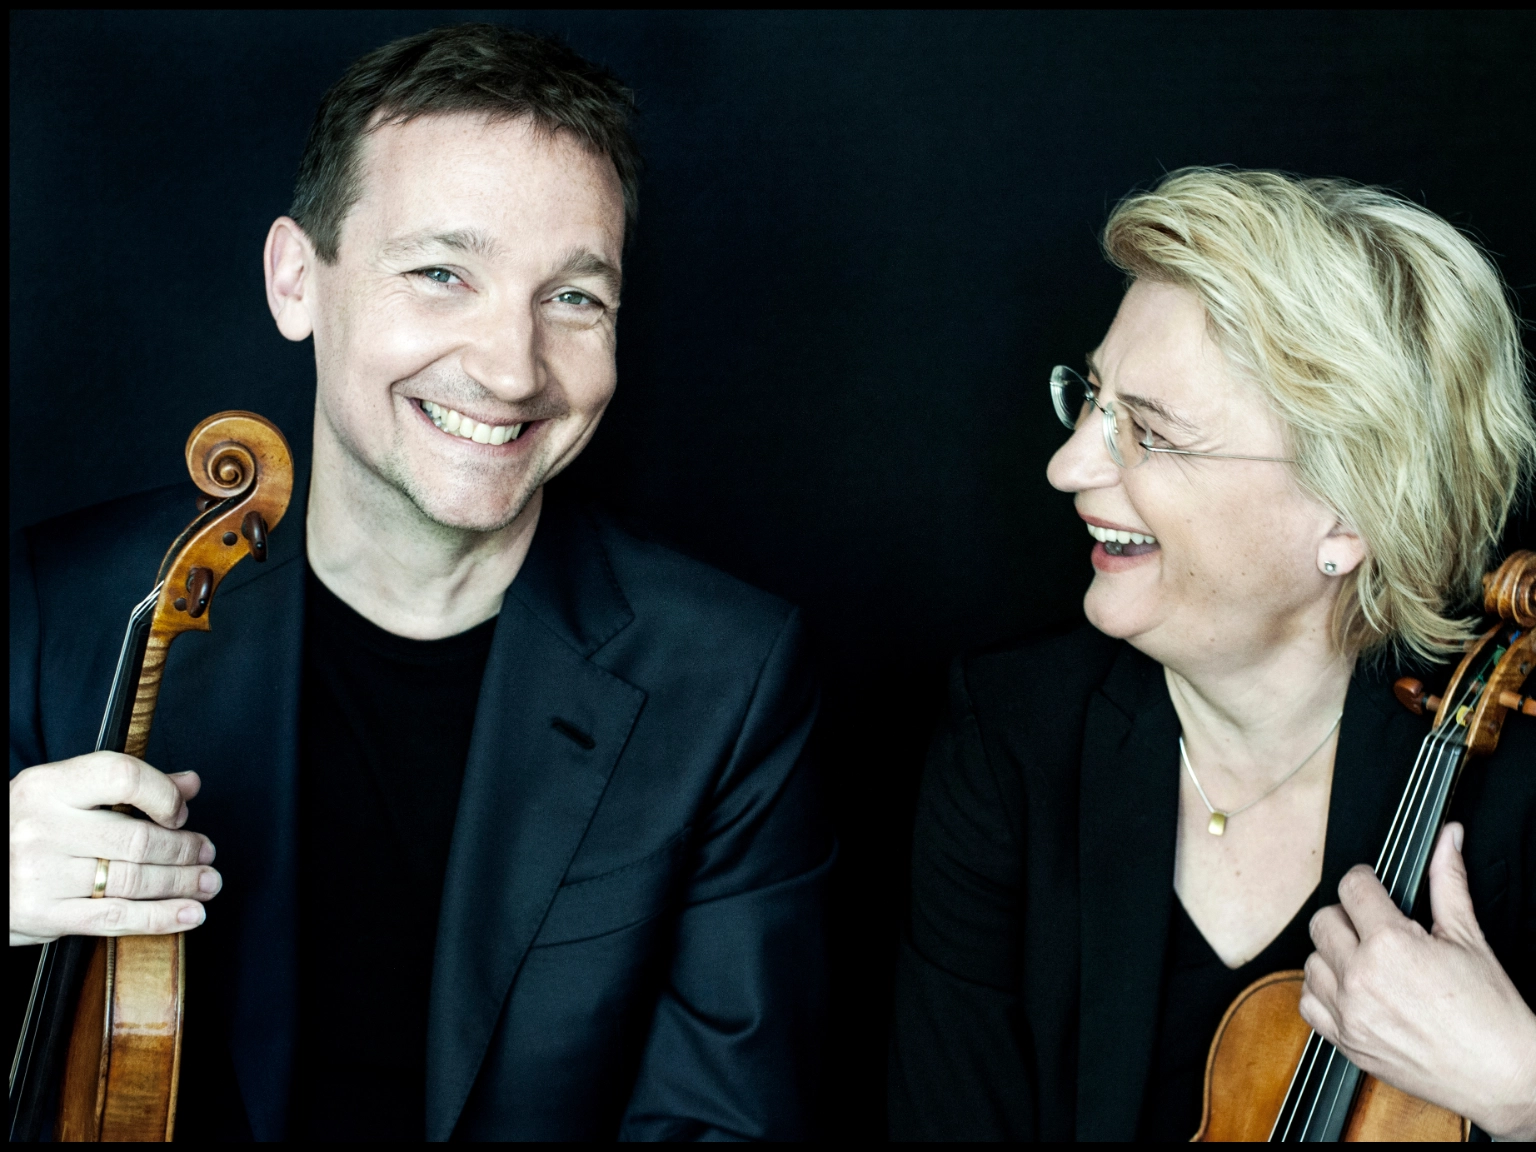 Die Künstlerische Leitung des Violinwettbewerbs: Antje Weithaas (rechts) und Oliver Wille (links). Beide halten eine Geige in der Hand. Oliver Wille lacht in die Kamera, Antje Weithaas schaut ihn lachend an.